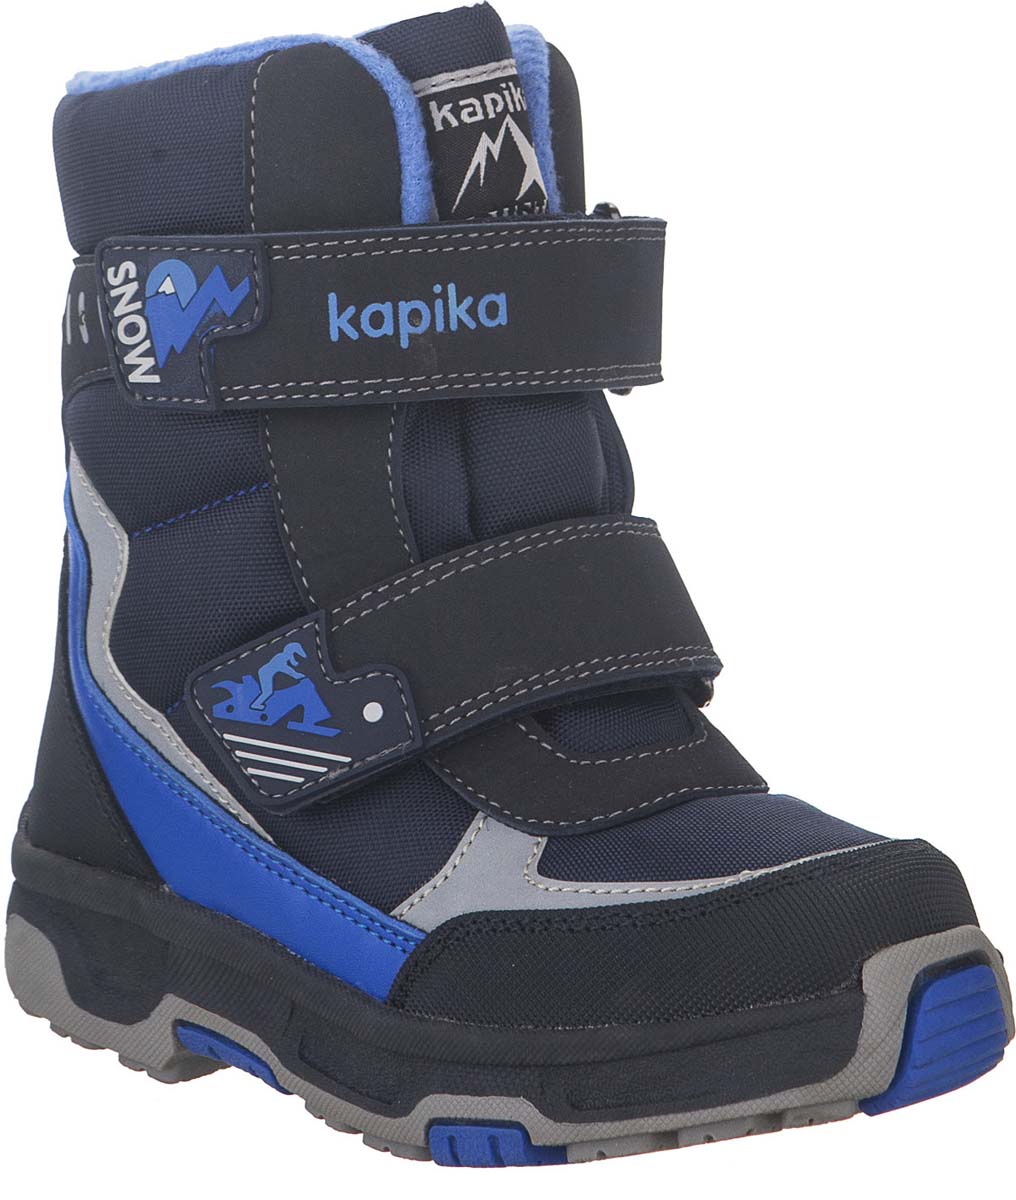 Ботинки для мальчика Kapika KapiTEX, цвет: темно-синий. 42230-1. Размер 31